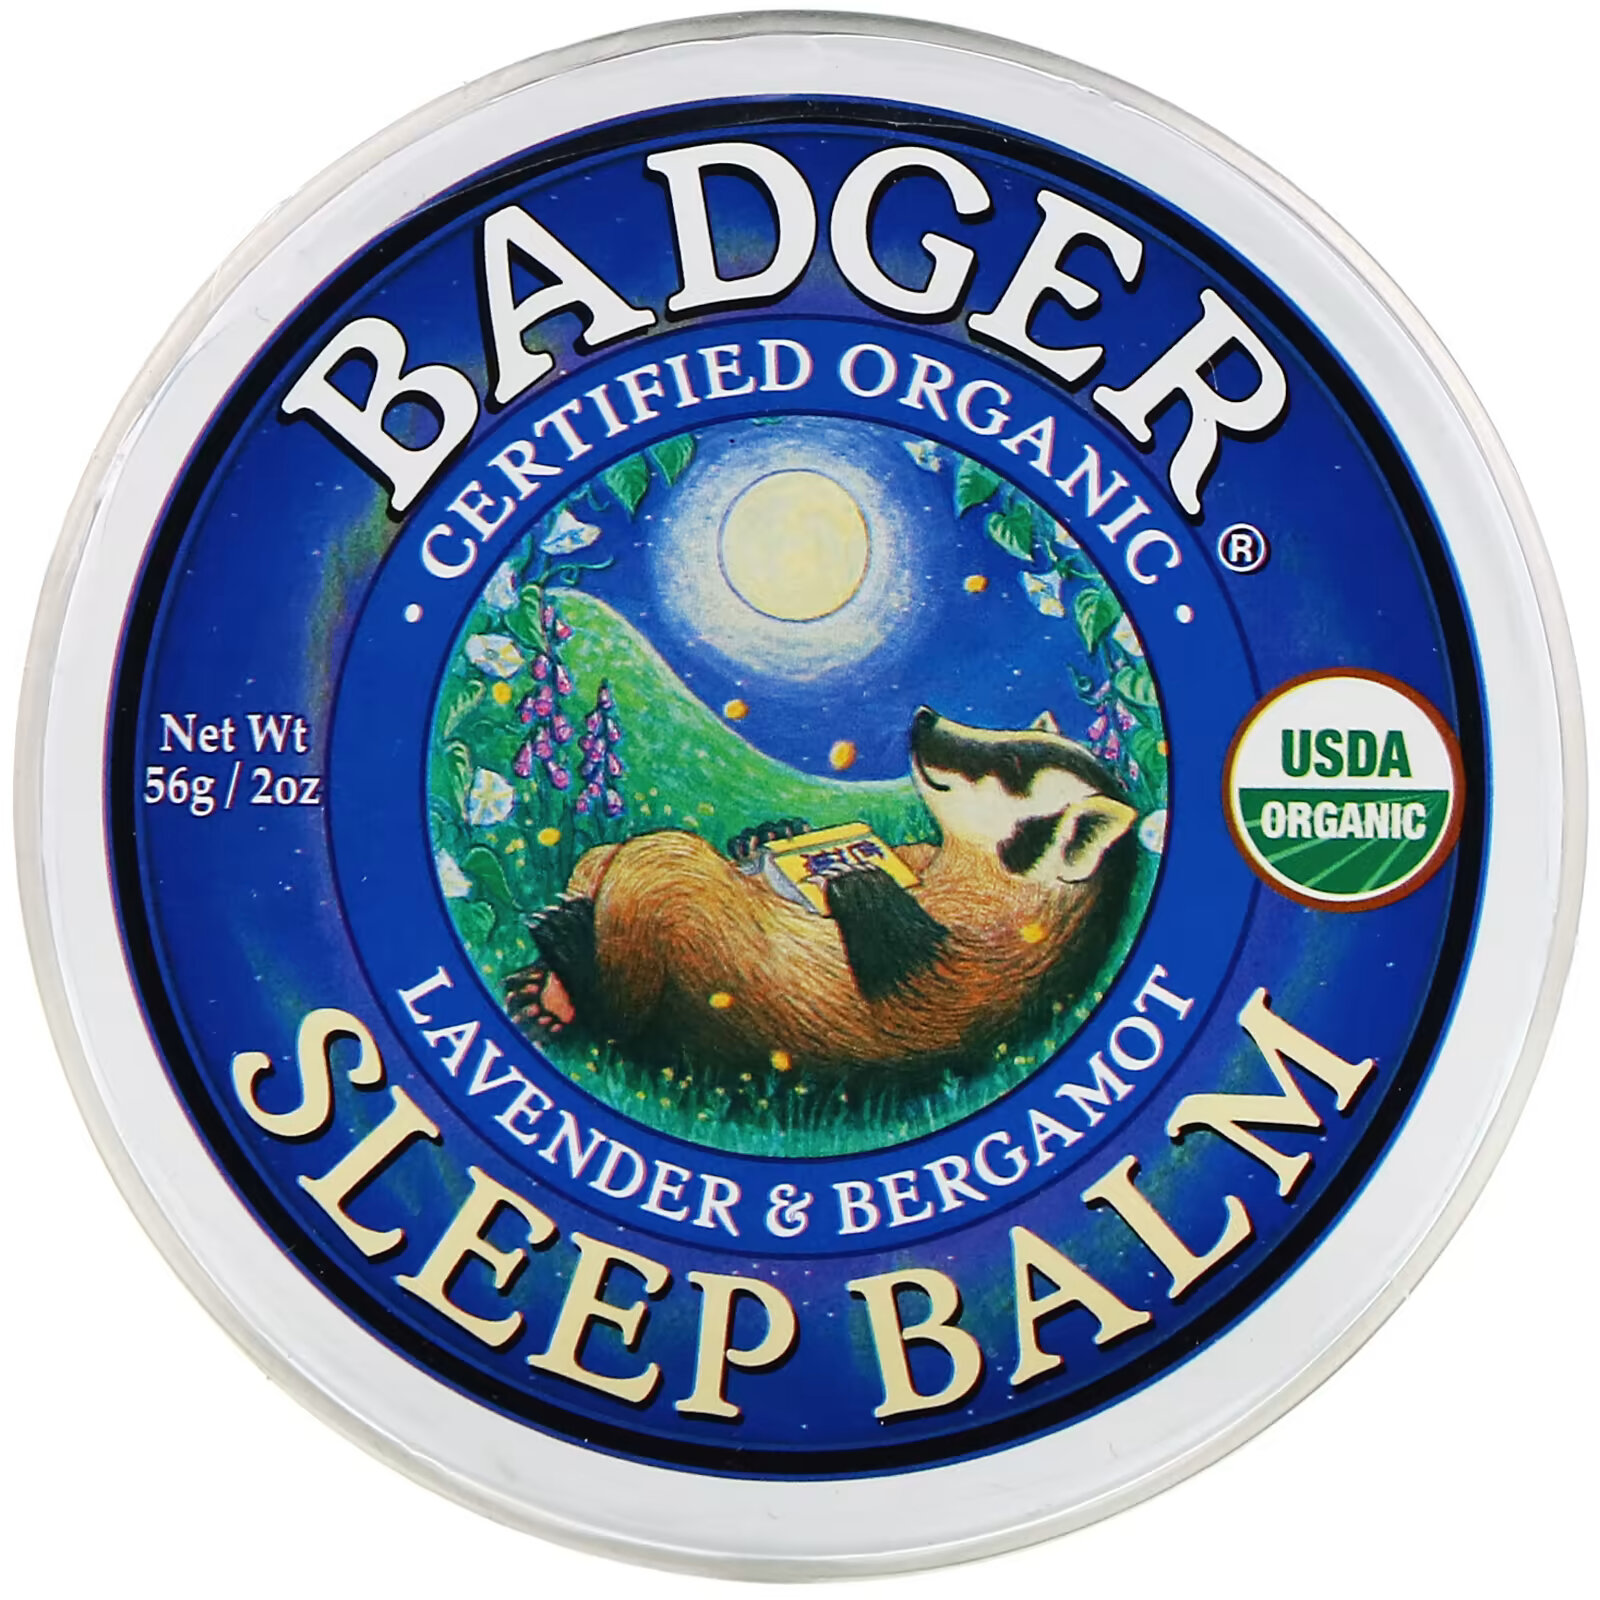 Badger Company, органический бальзам для сна, лаванда и бергамот, 56 г (2 унции) badger company органический бальзам после загара голубая пижма и лаванда 56 г 2 унции